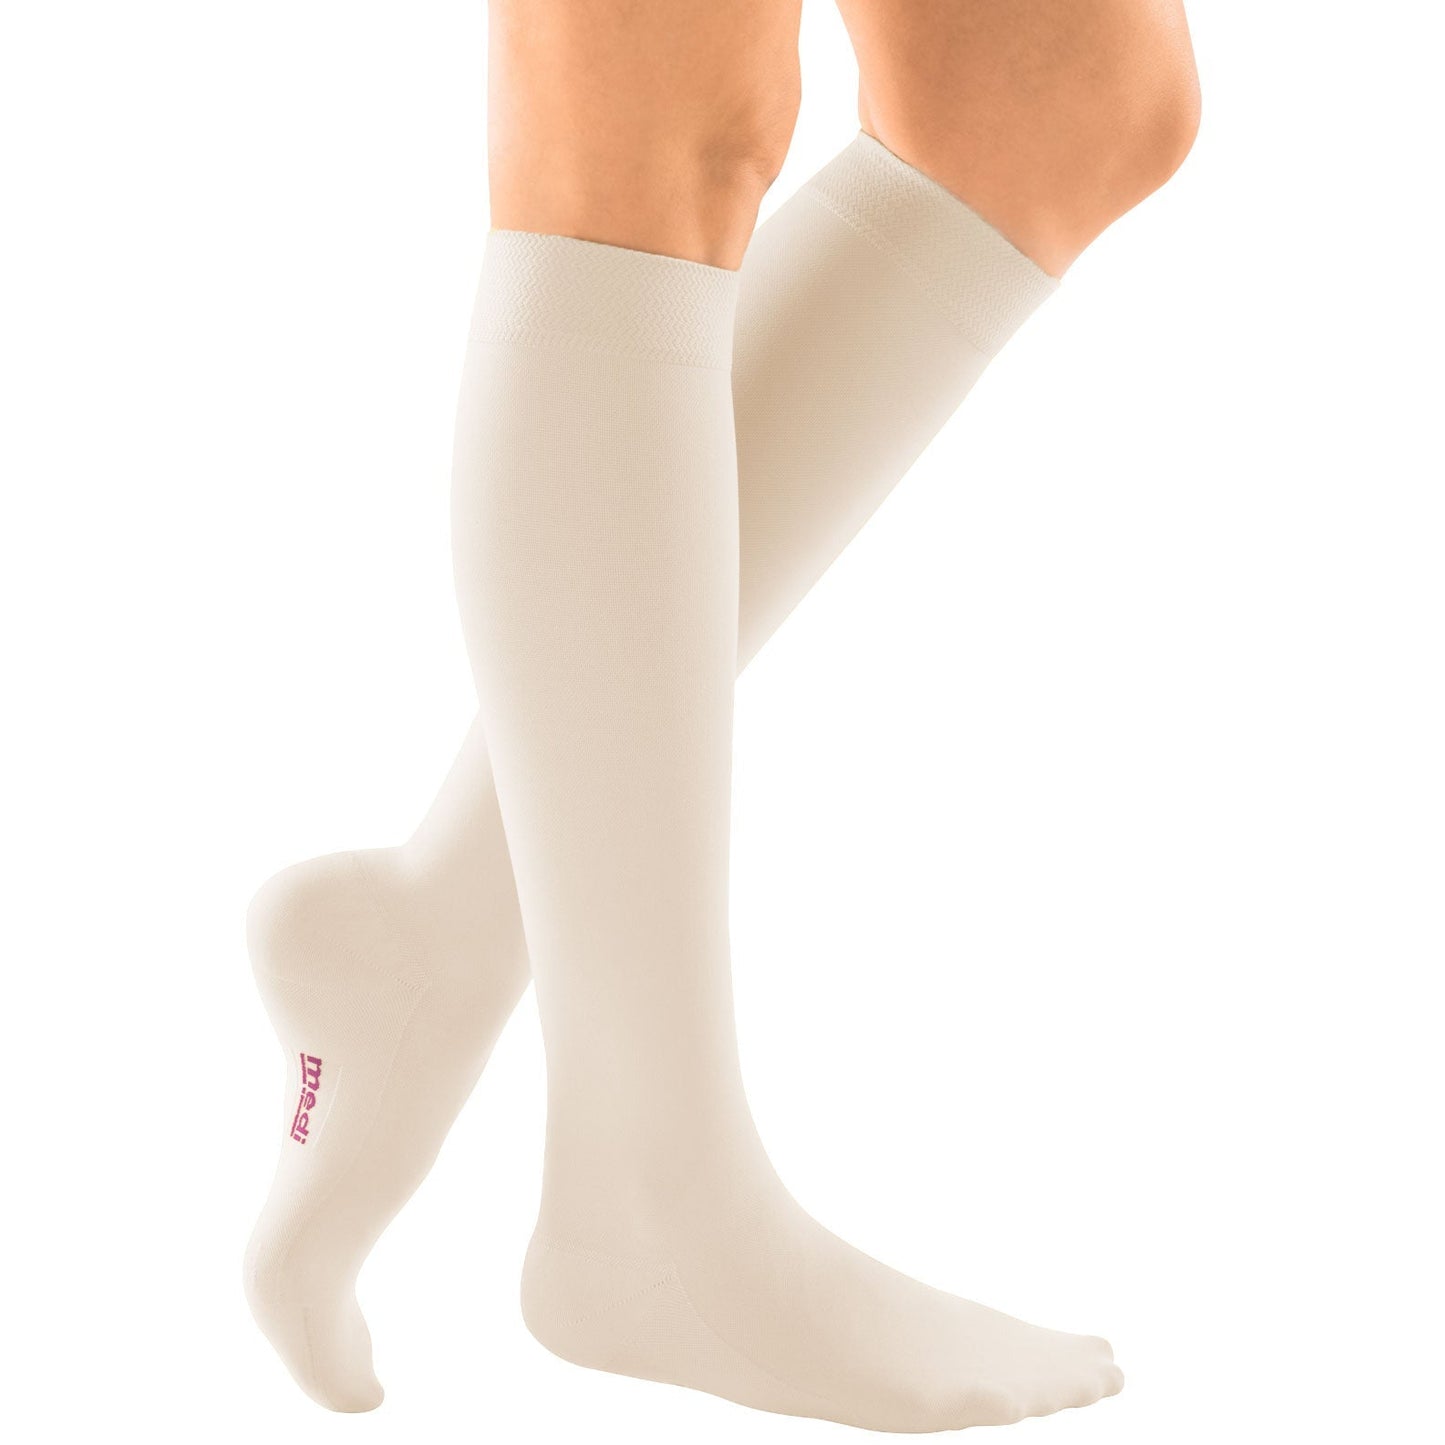 mediven comfort 15-20 mmHg calf closed toe standard